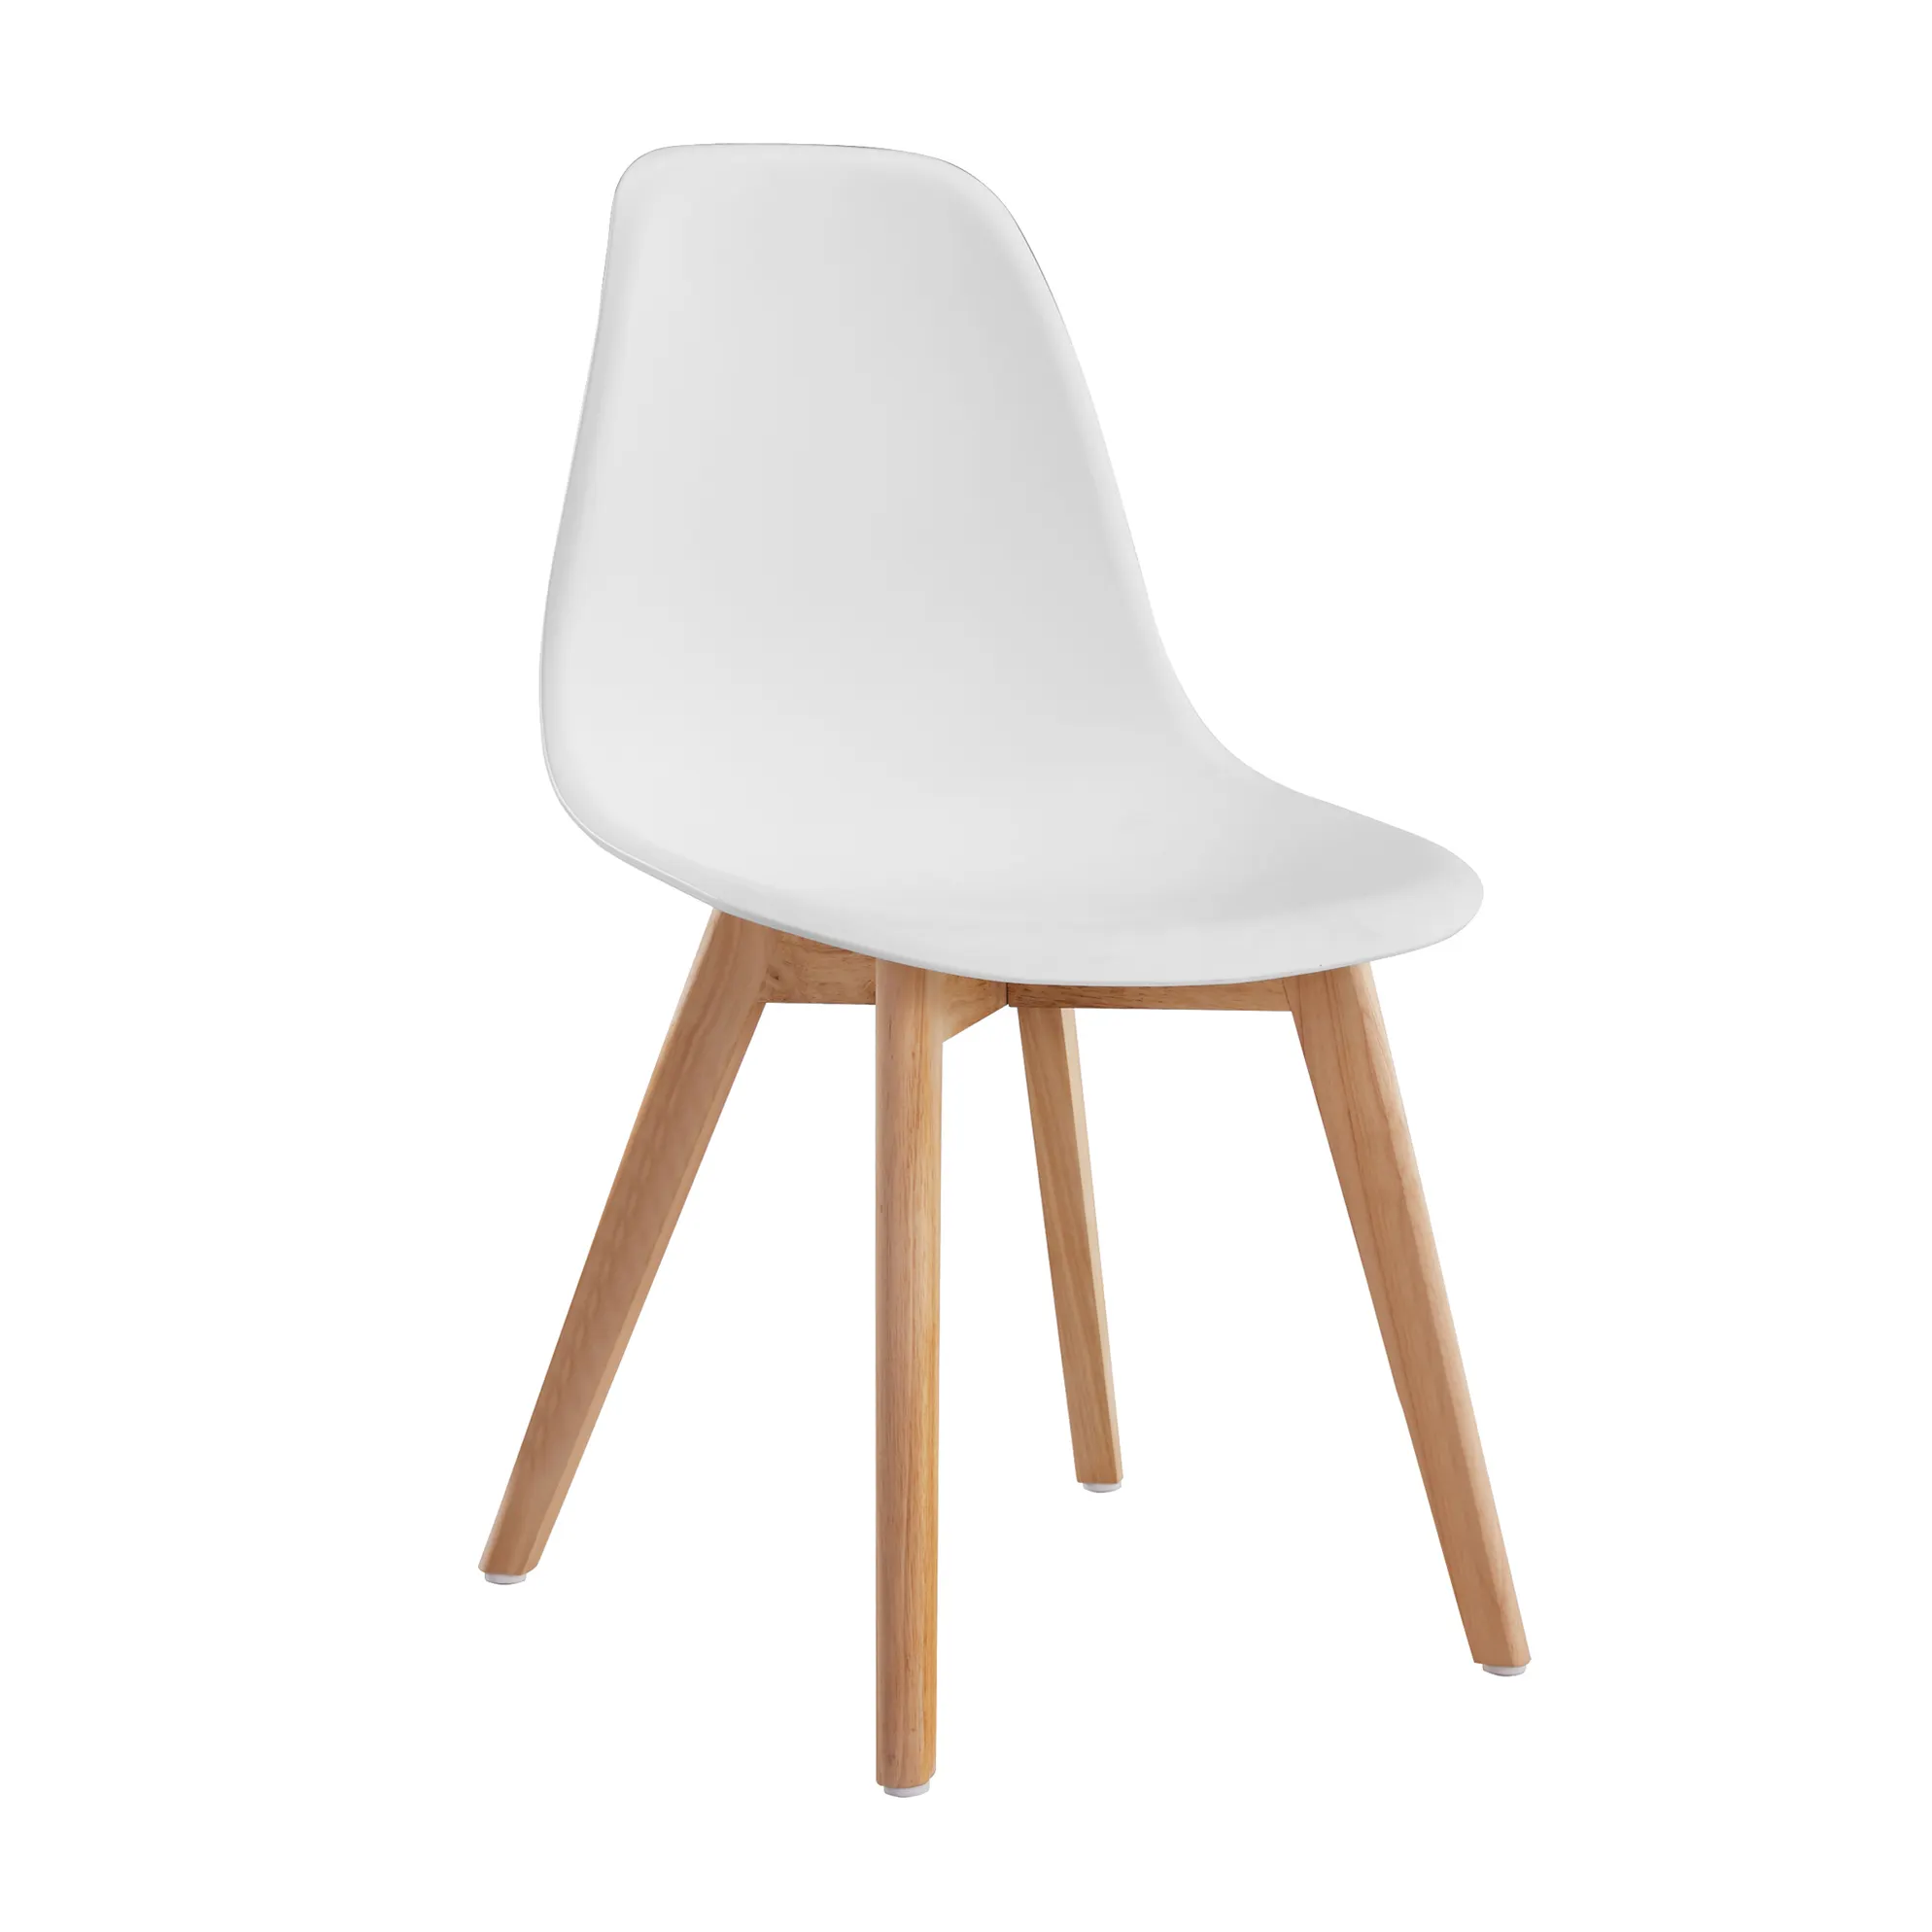 Sedie da pranzo cucina polipropilene sedia in plastica Nordica con gambe in legno mobili per la casa moderni economici Silla Nordica contemporanea